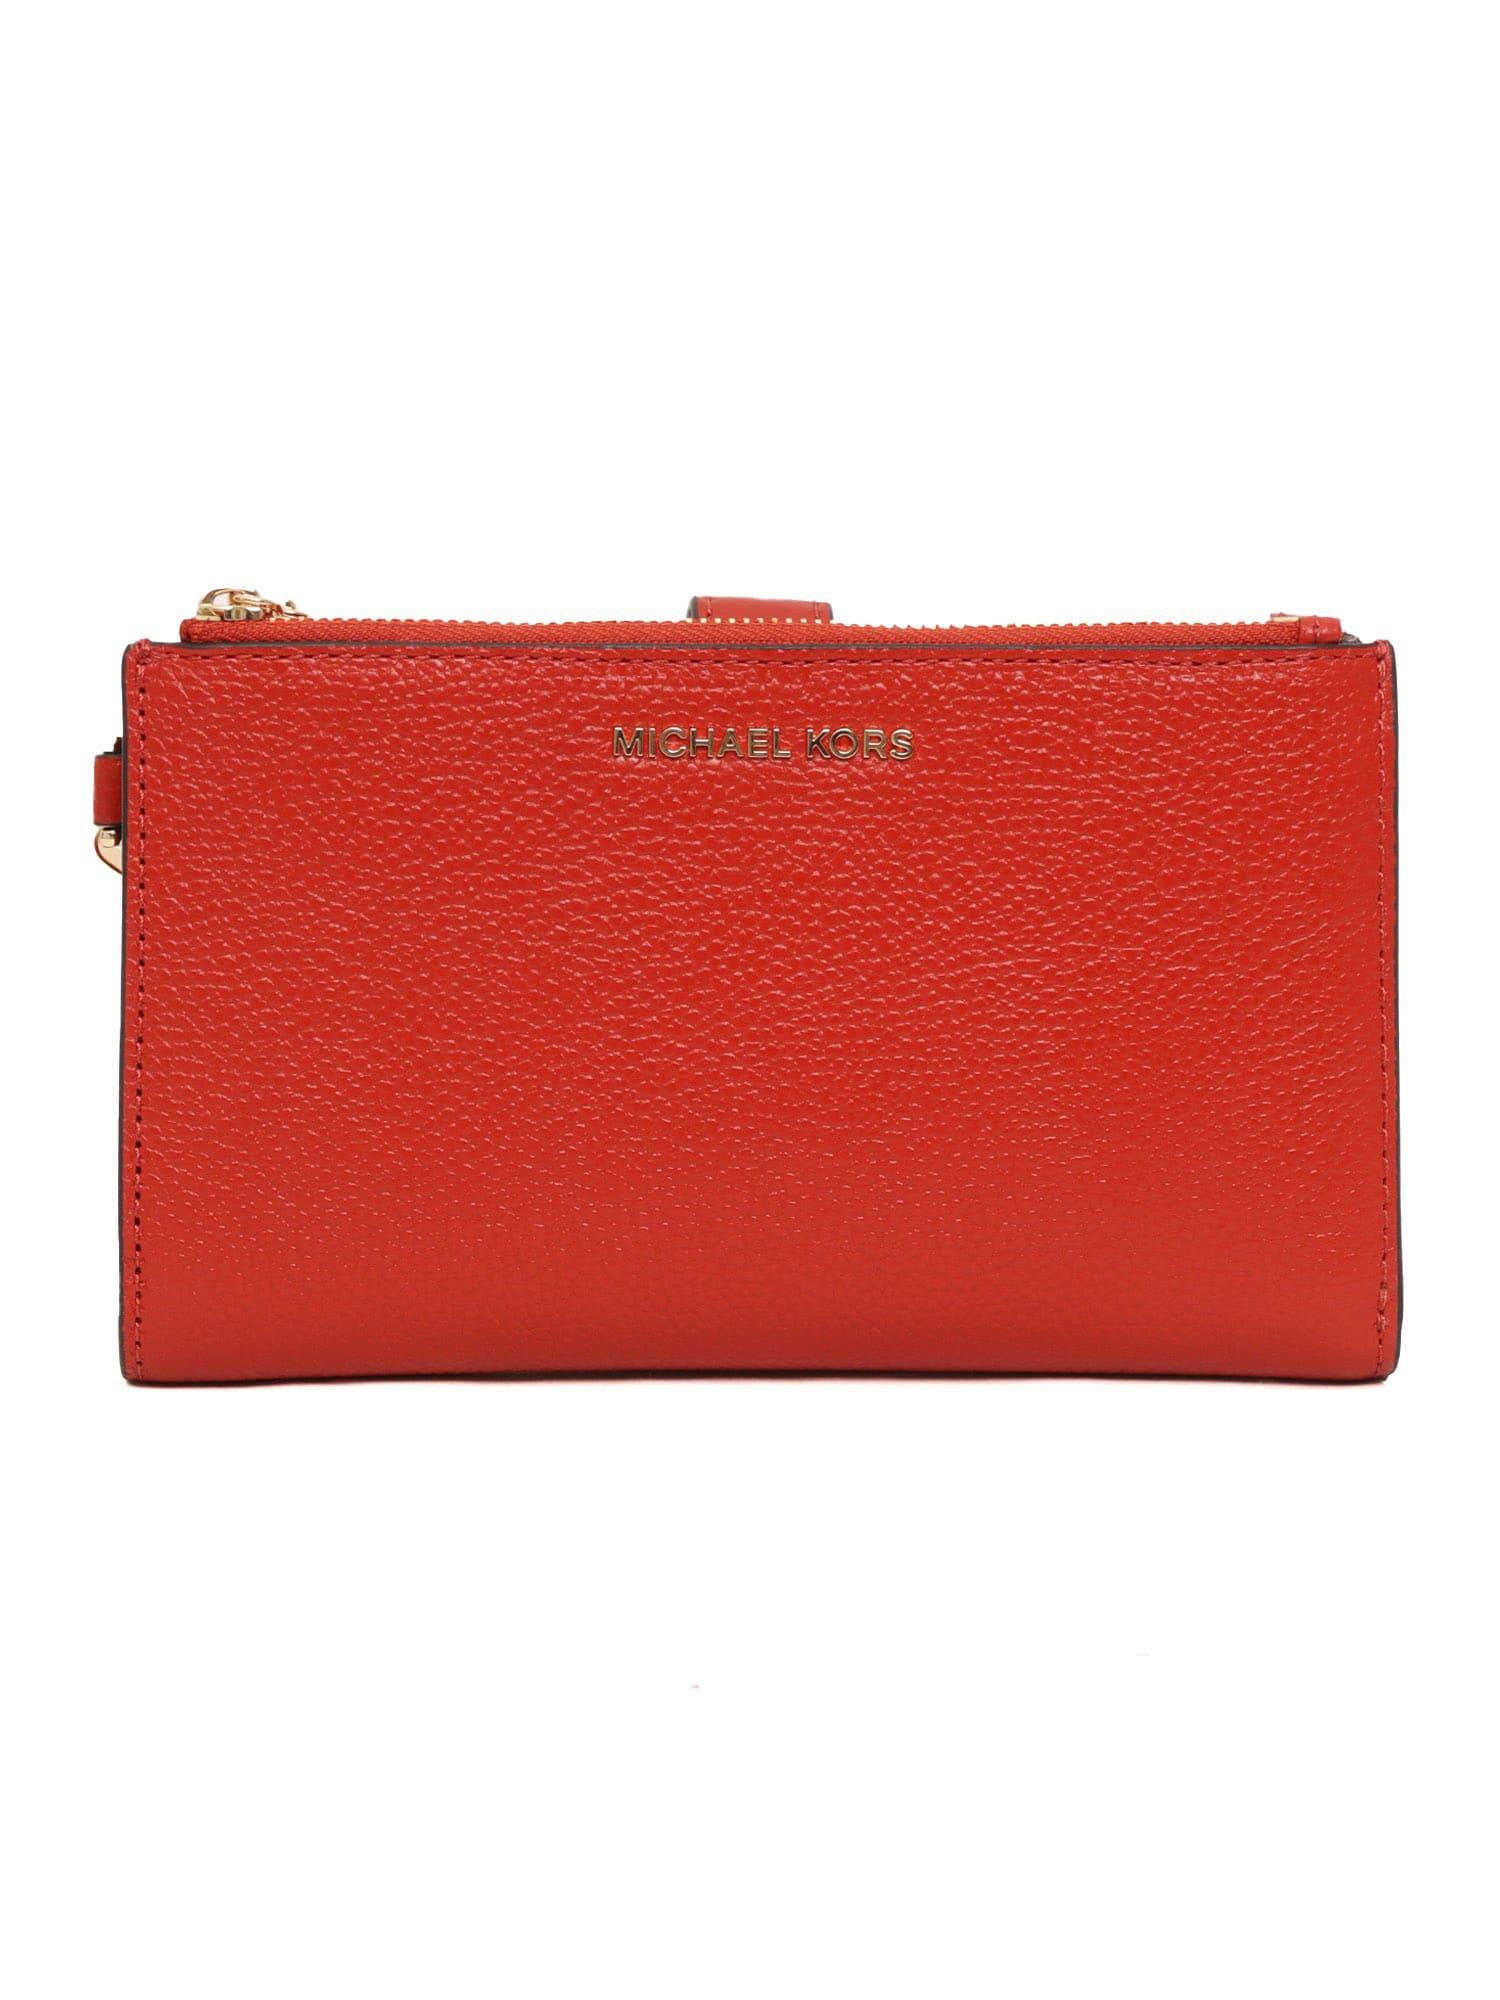 Michael Kors Women's Wallet - Red